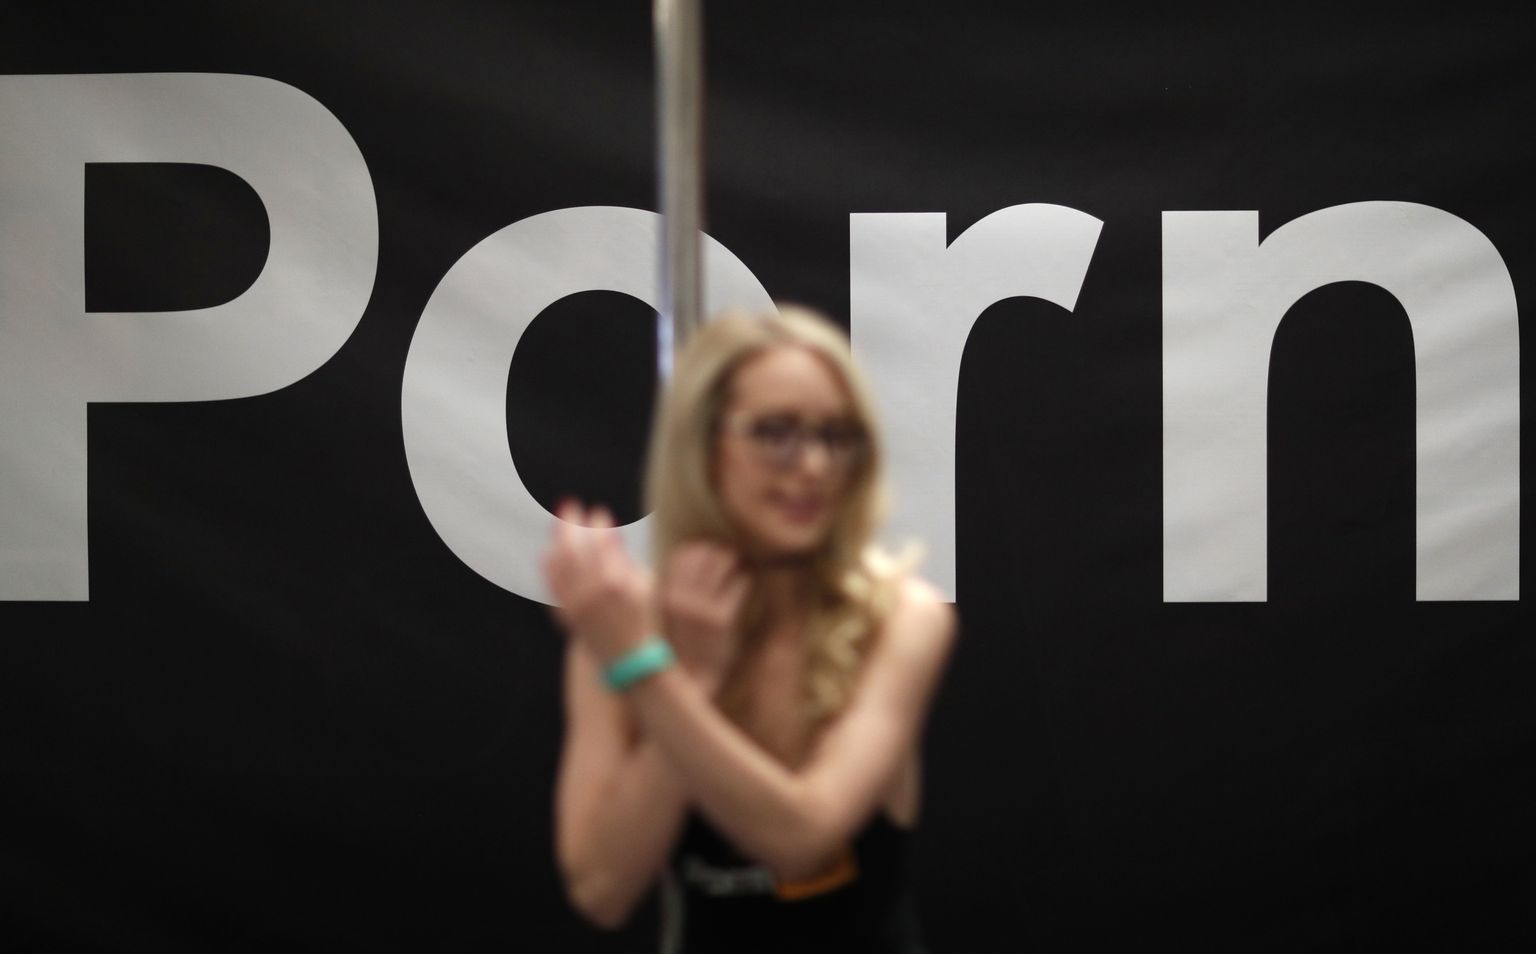 Pornostaar Ginger Banks seismas Pornhubi putka ees selle aasta AVN auhindade ajal. Pornhub on esimene pornoportaal, mis rahastab pornouuringuid.